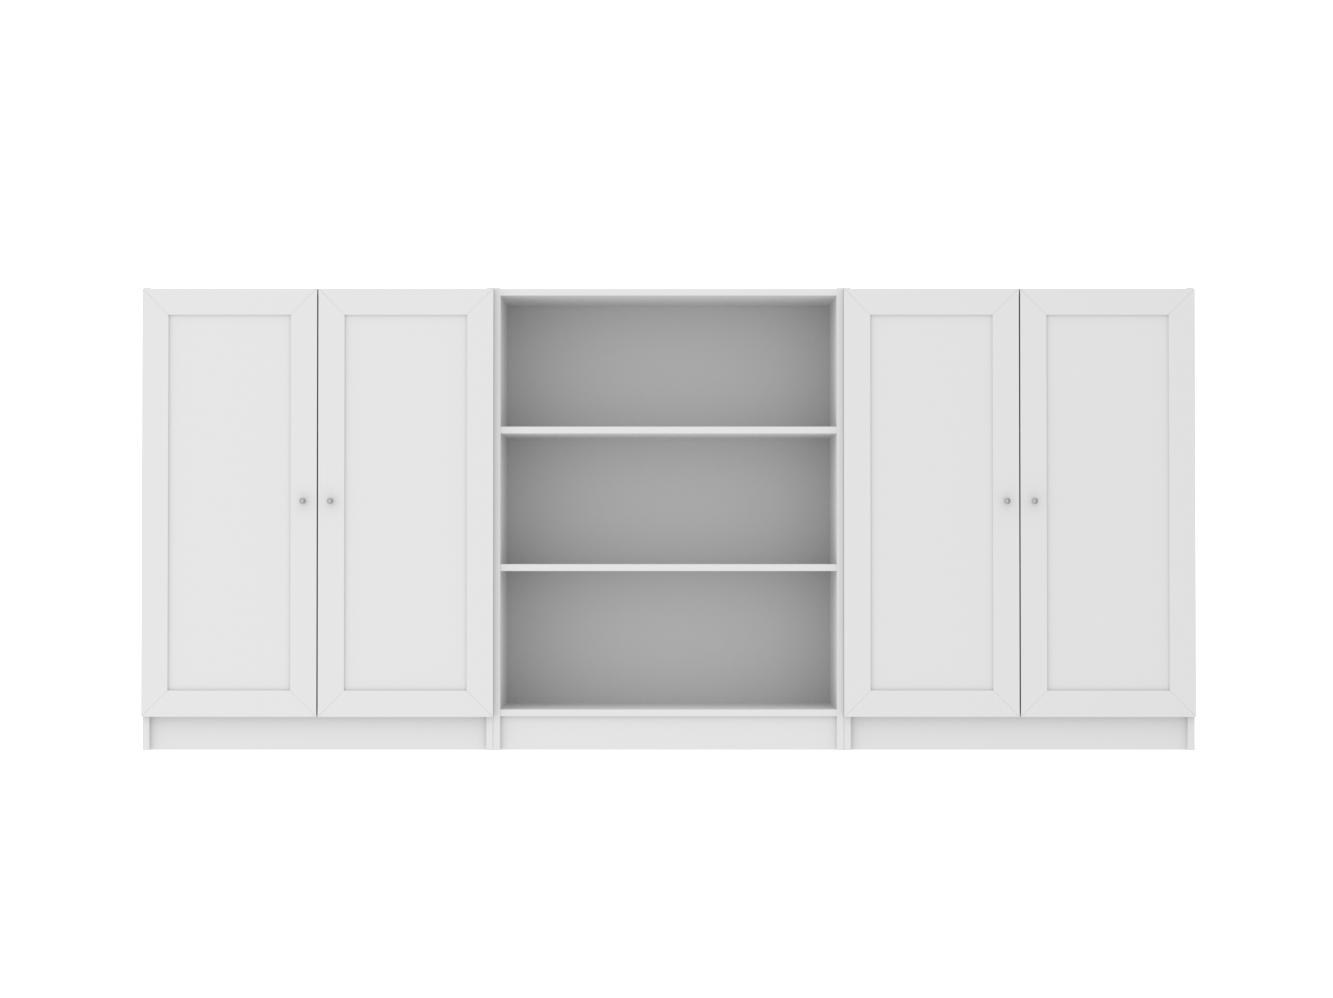 Комод Билли 211 white ИКЕА (IKEA) изображение товара